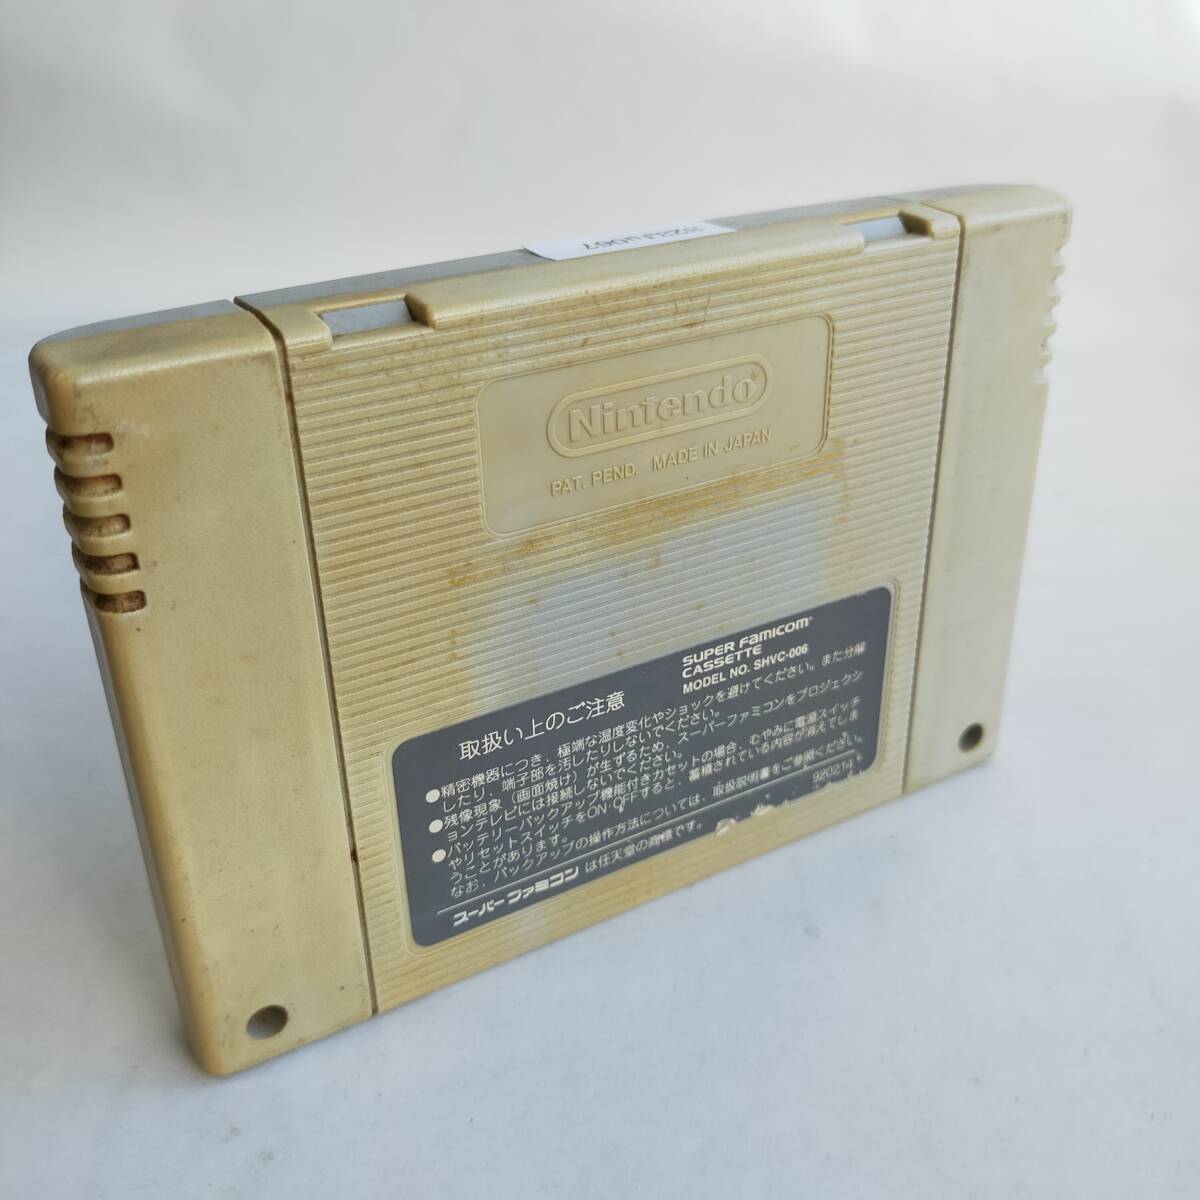  реальный битва игровой автомат обязательно . закон Super Famicom рабочее состояние подтверждено * терминал чистка settled [SFC6685_2307067]